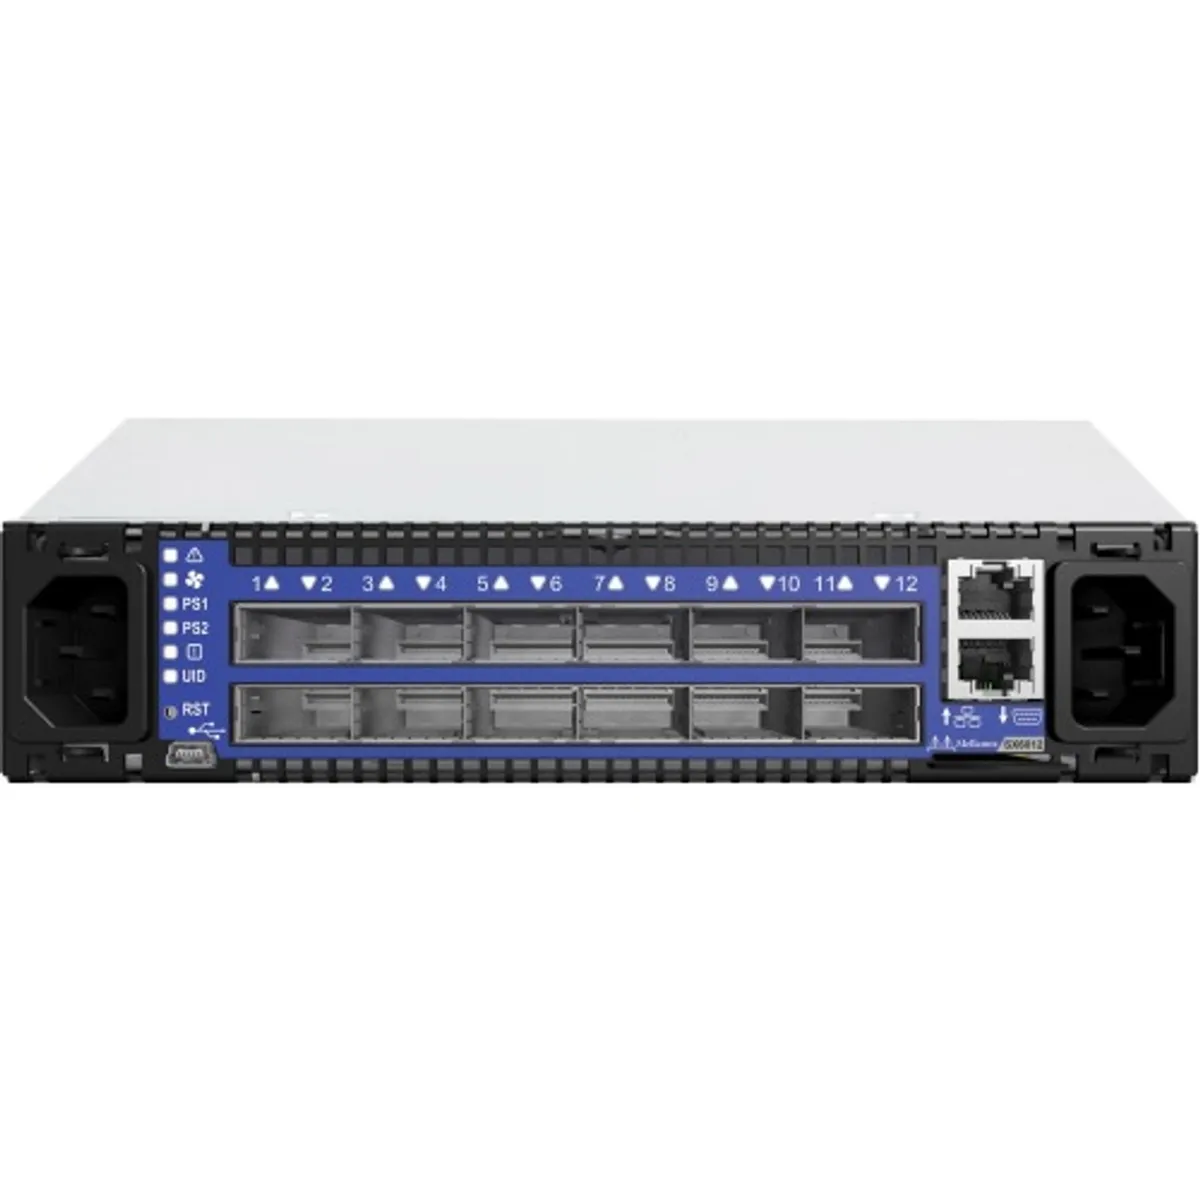 EMC 100-886-236-04 12xQSFP+ 56G Managed Switch w/Rack Shelf